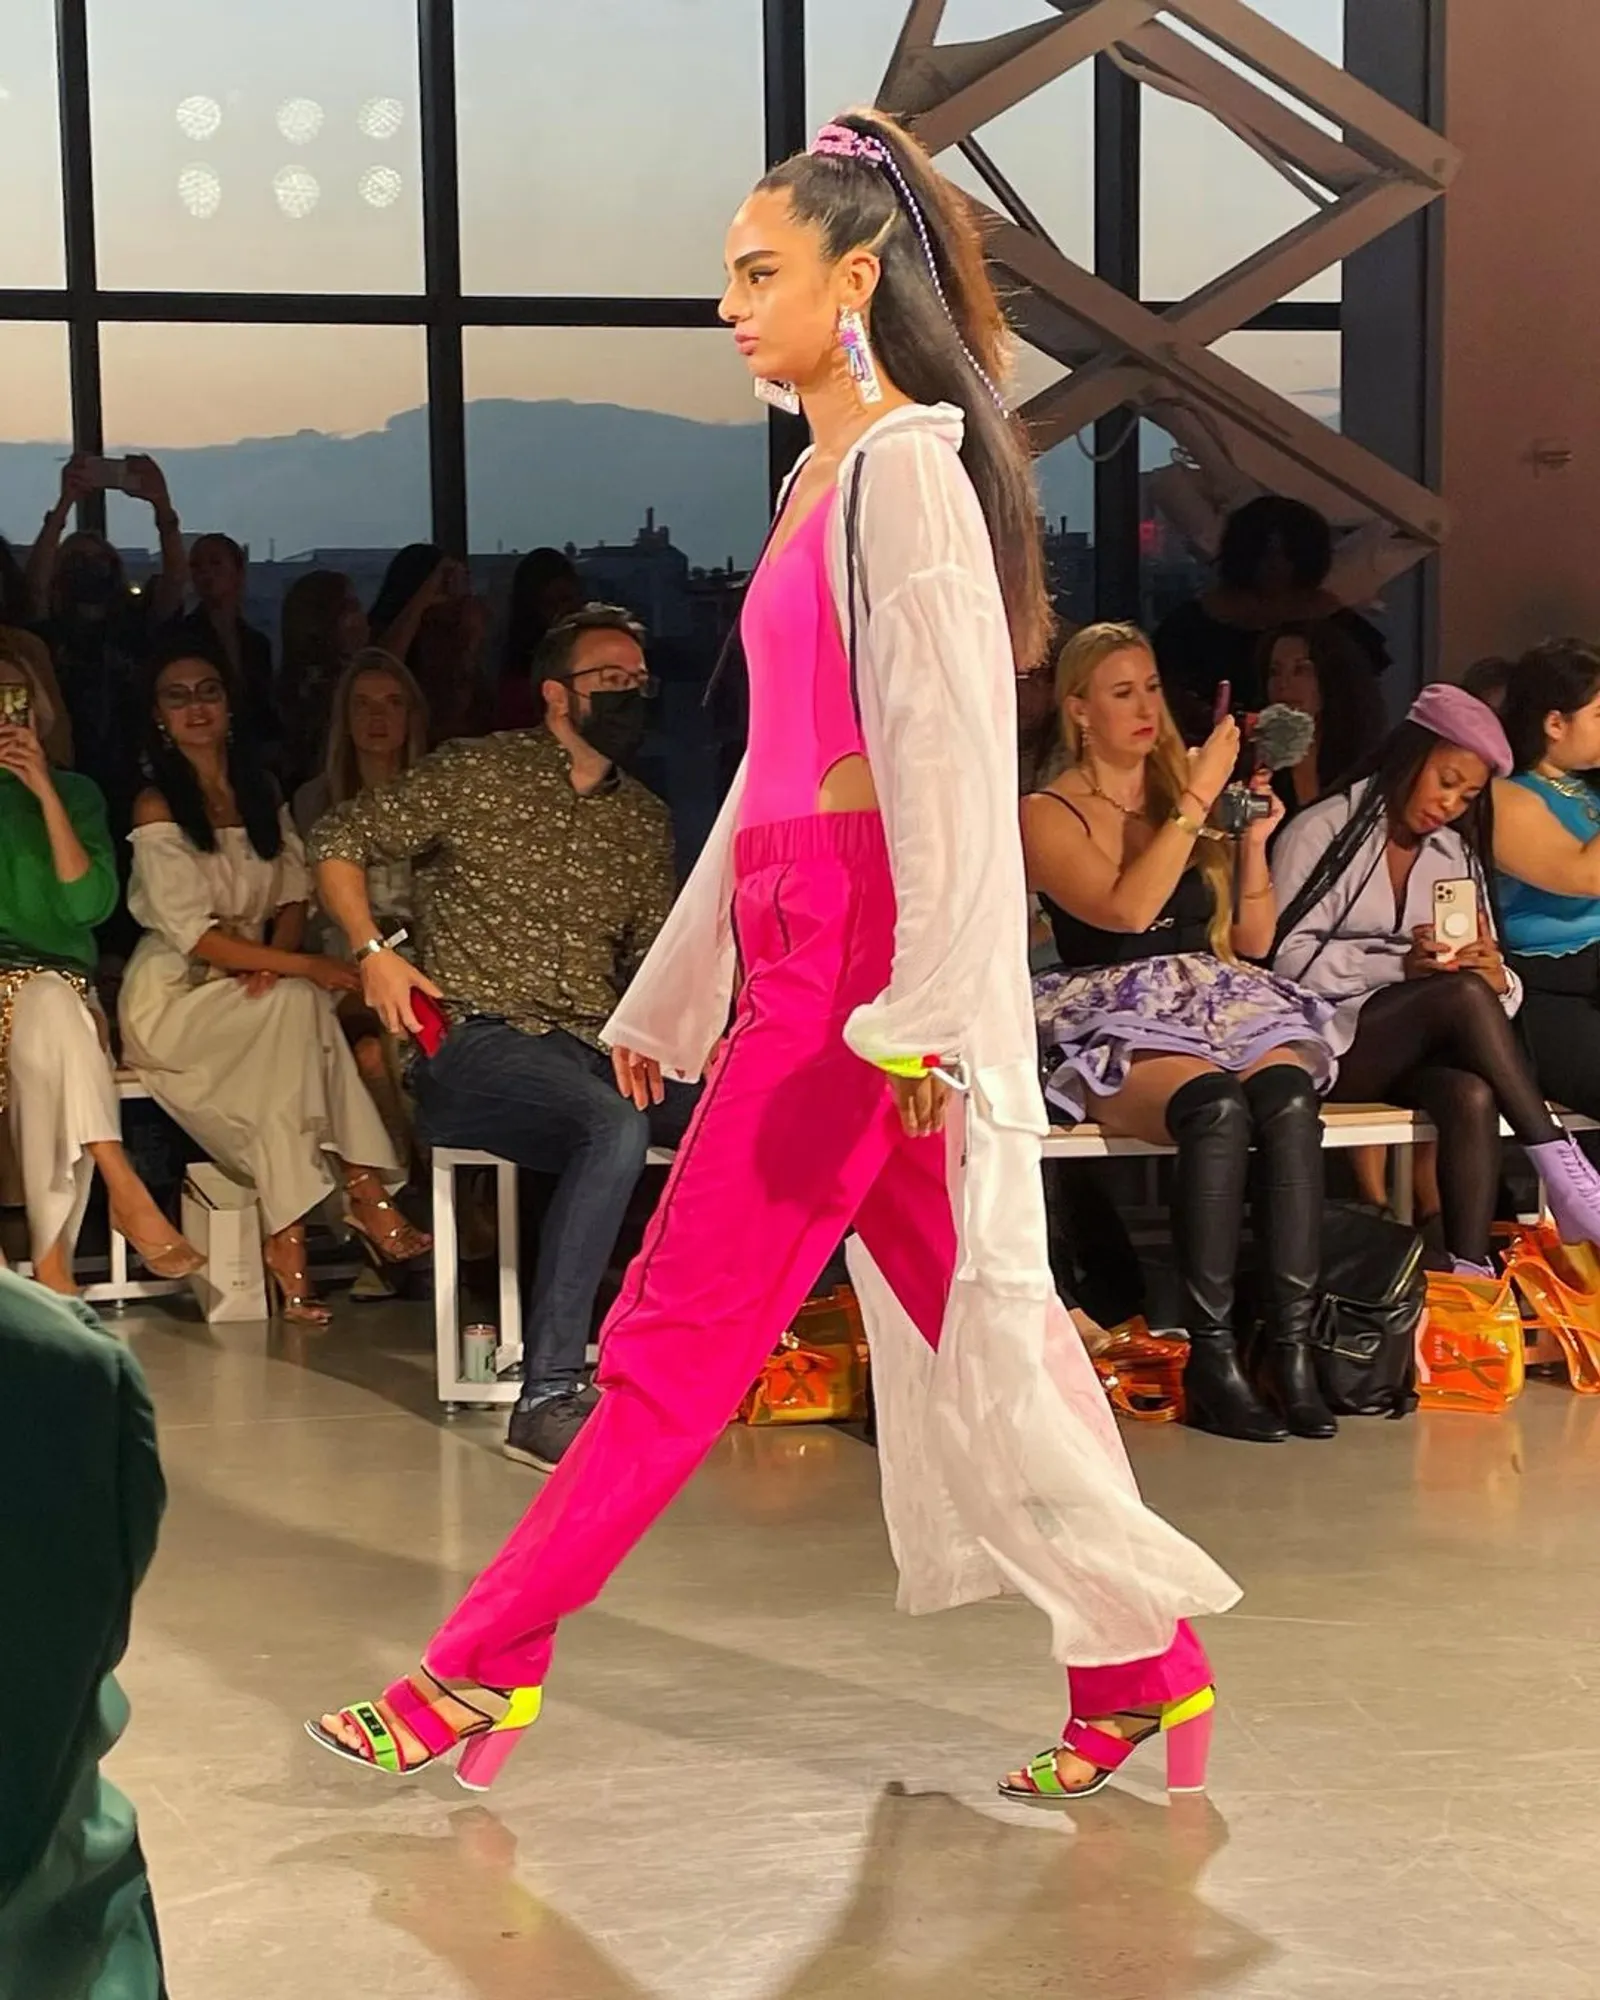 Deretan Koleksi Erigo yang Tampil di New York Fashion Week 2022